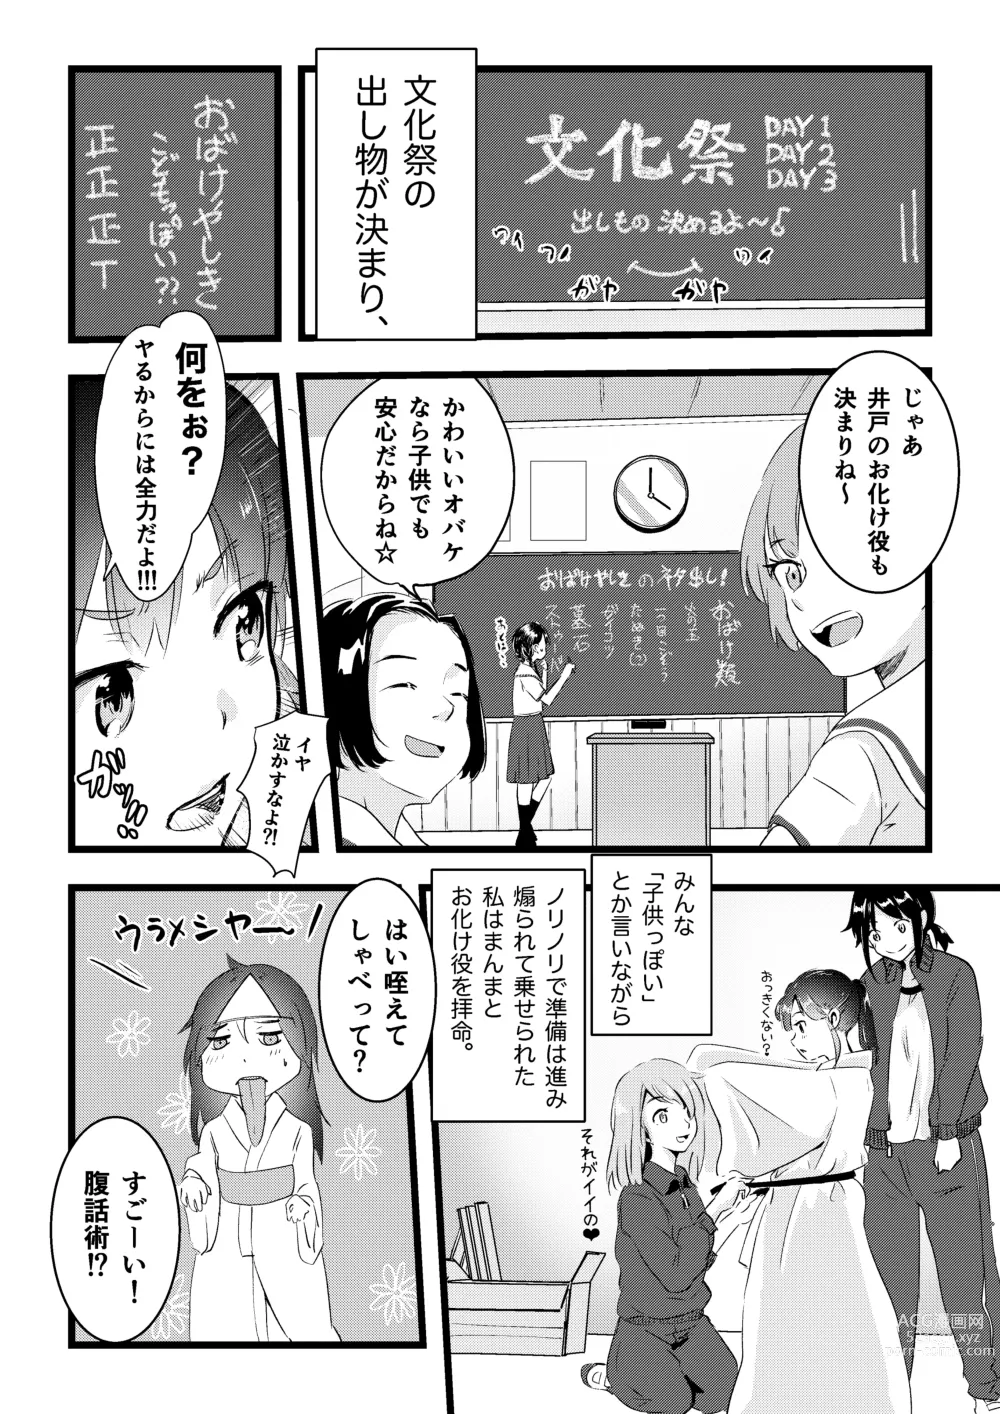 Page 6 of doujinshi Shitanaga-chan to Kanbotsu-chan no Muishiki Yuri Ecchi